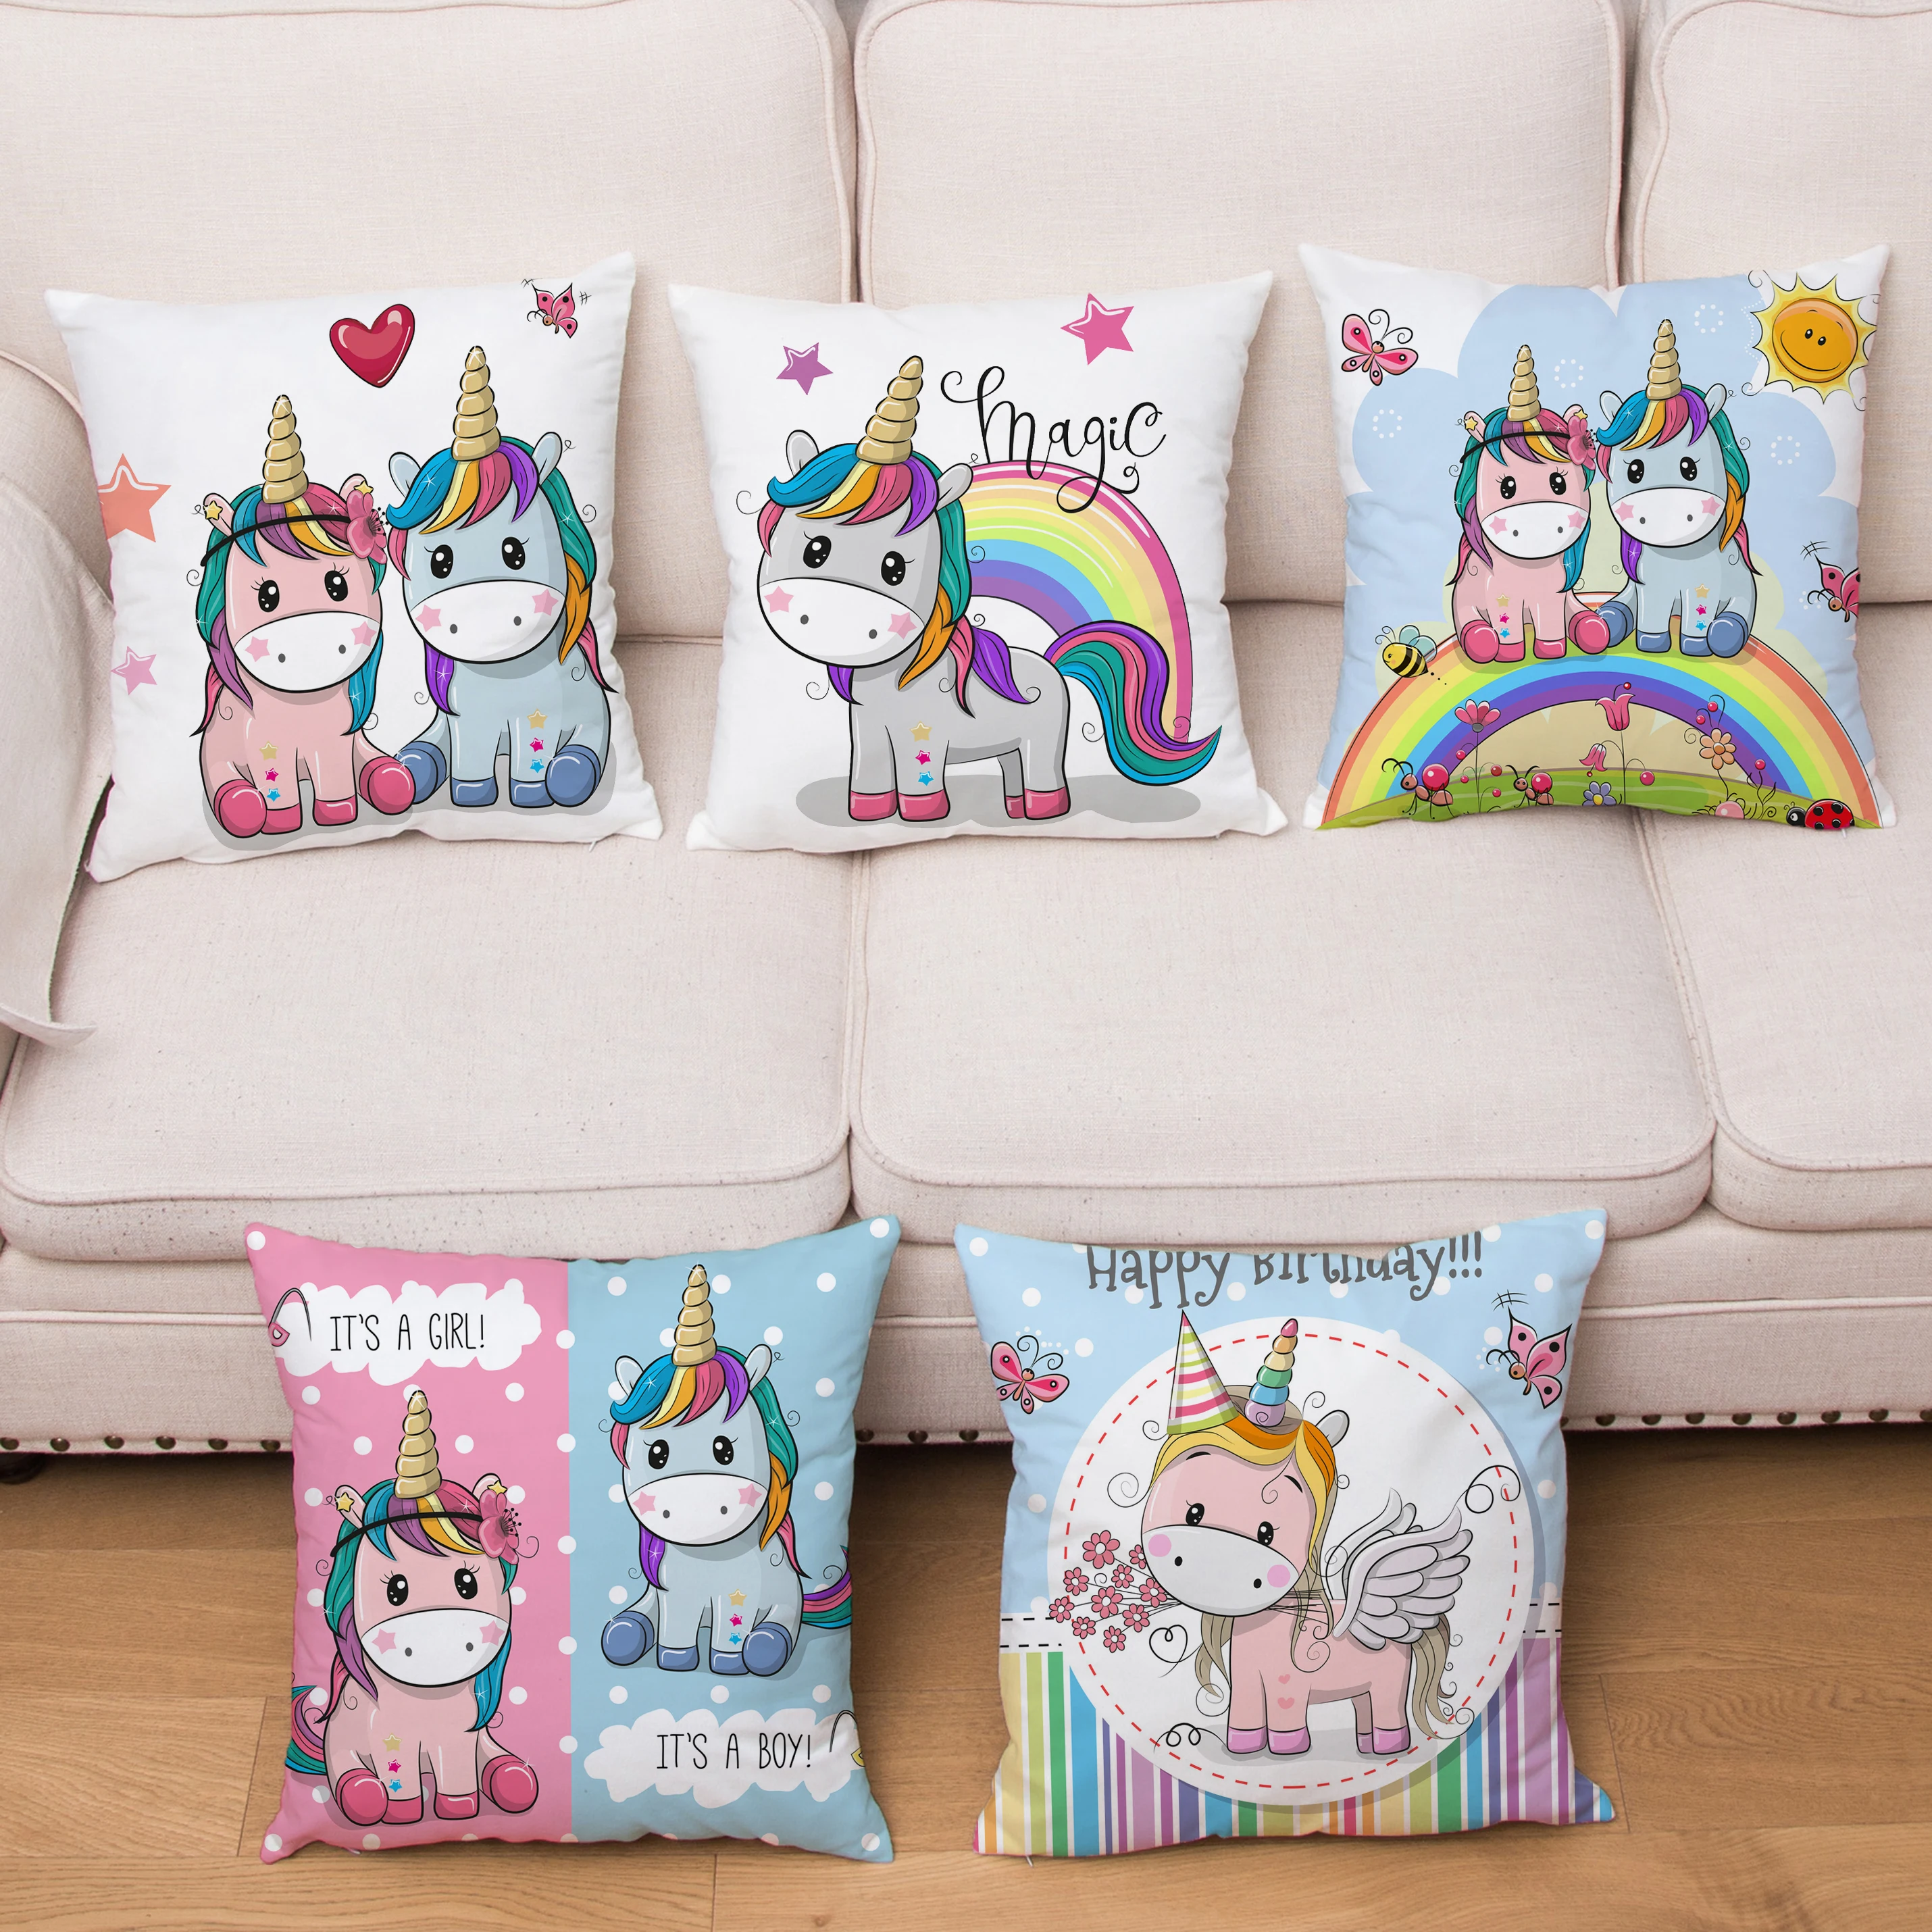 

45*45cm Super Soft Short Plush Cushion Cover Cute Cartoon Unicorn Print Pillow Covers Soft Pillows Cases Home Decor Pillowcase